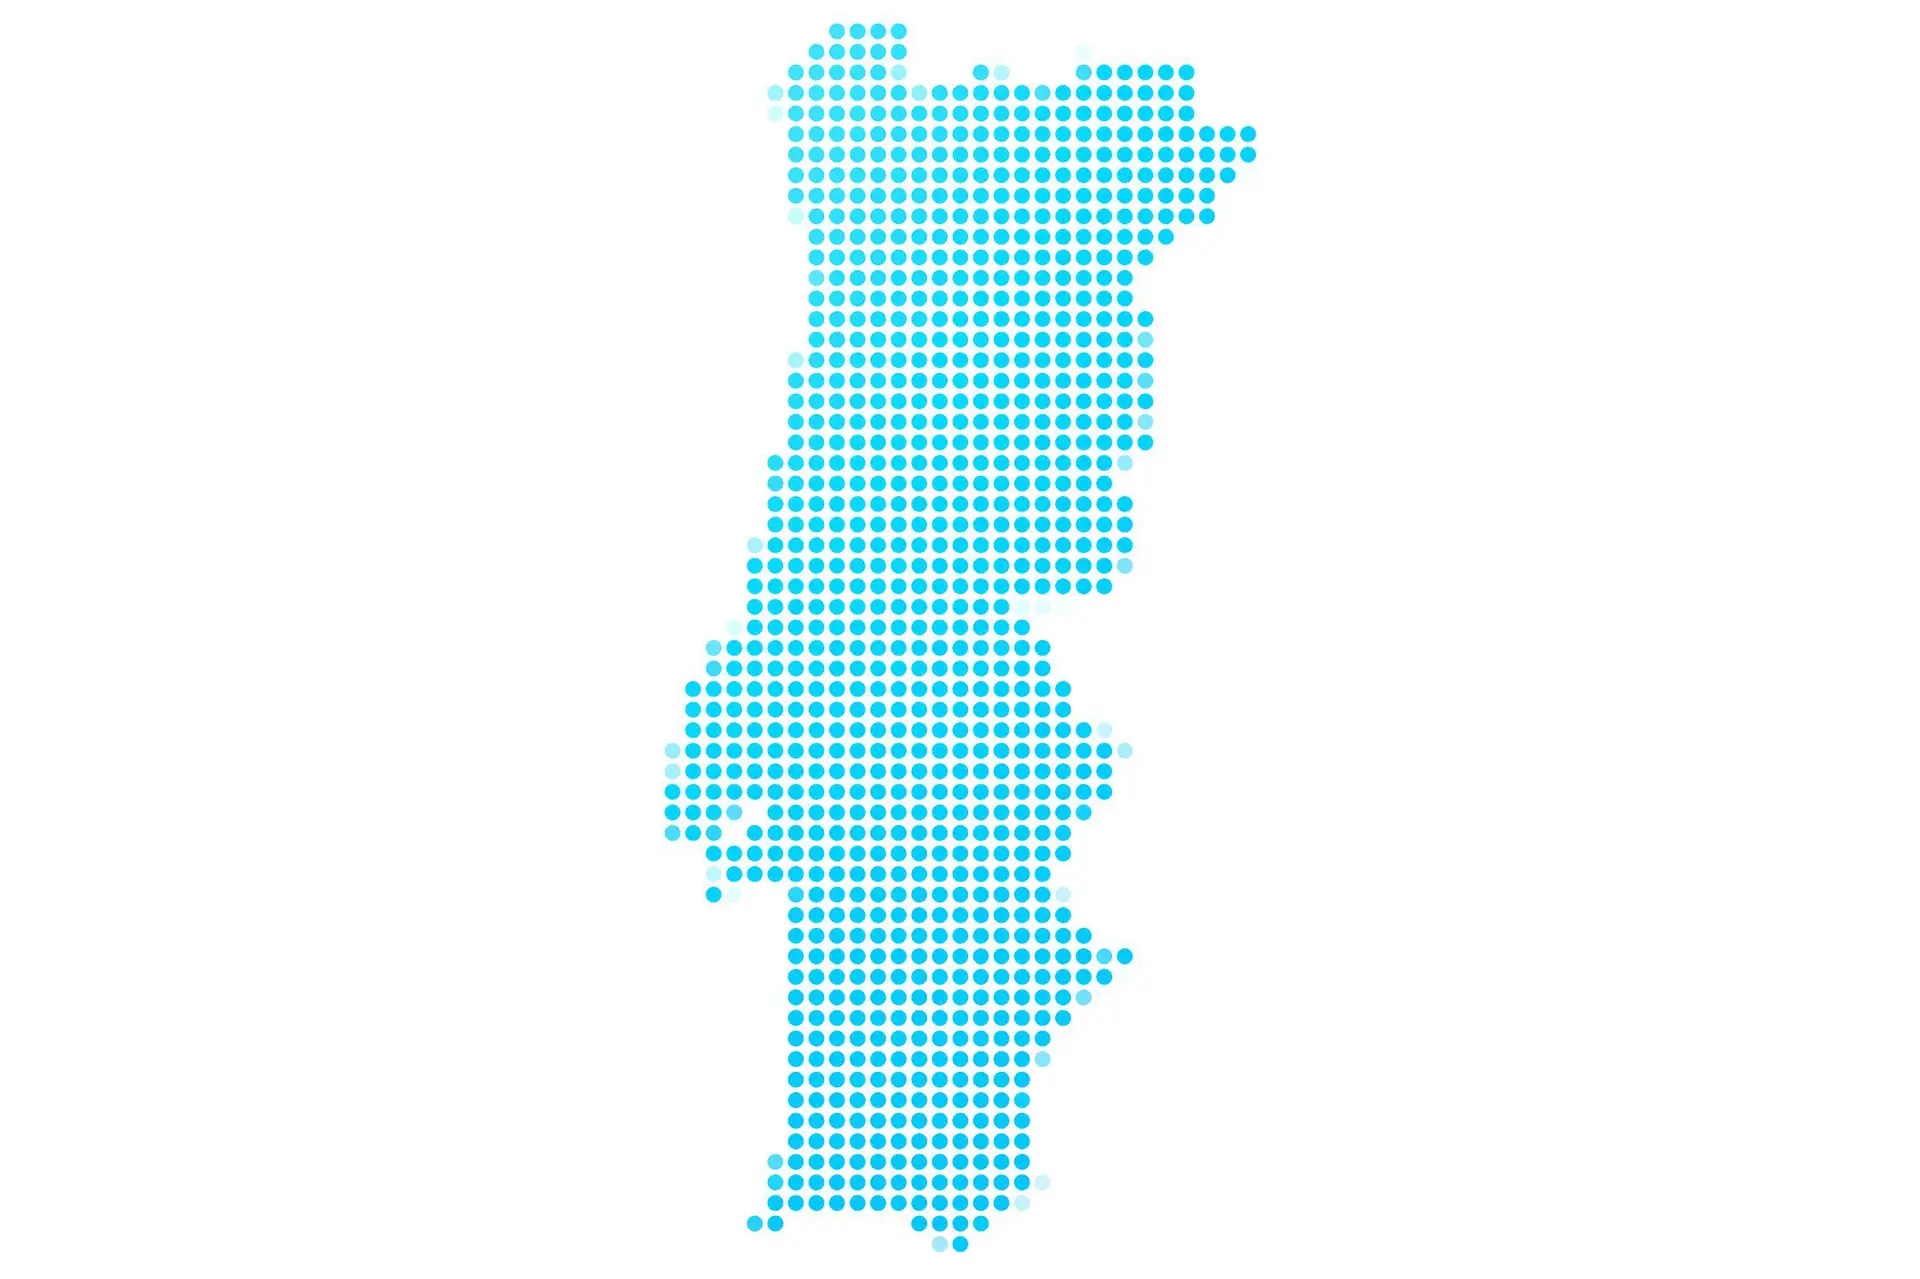 Por larga maioria, as juntas de freguesia chumbaram a regionalização em Portugal